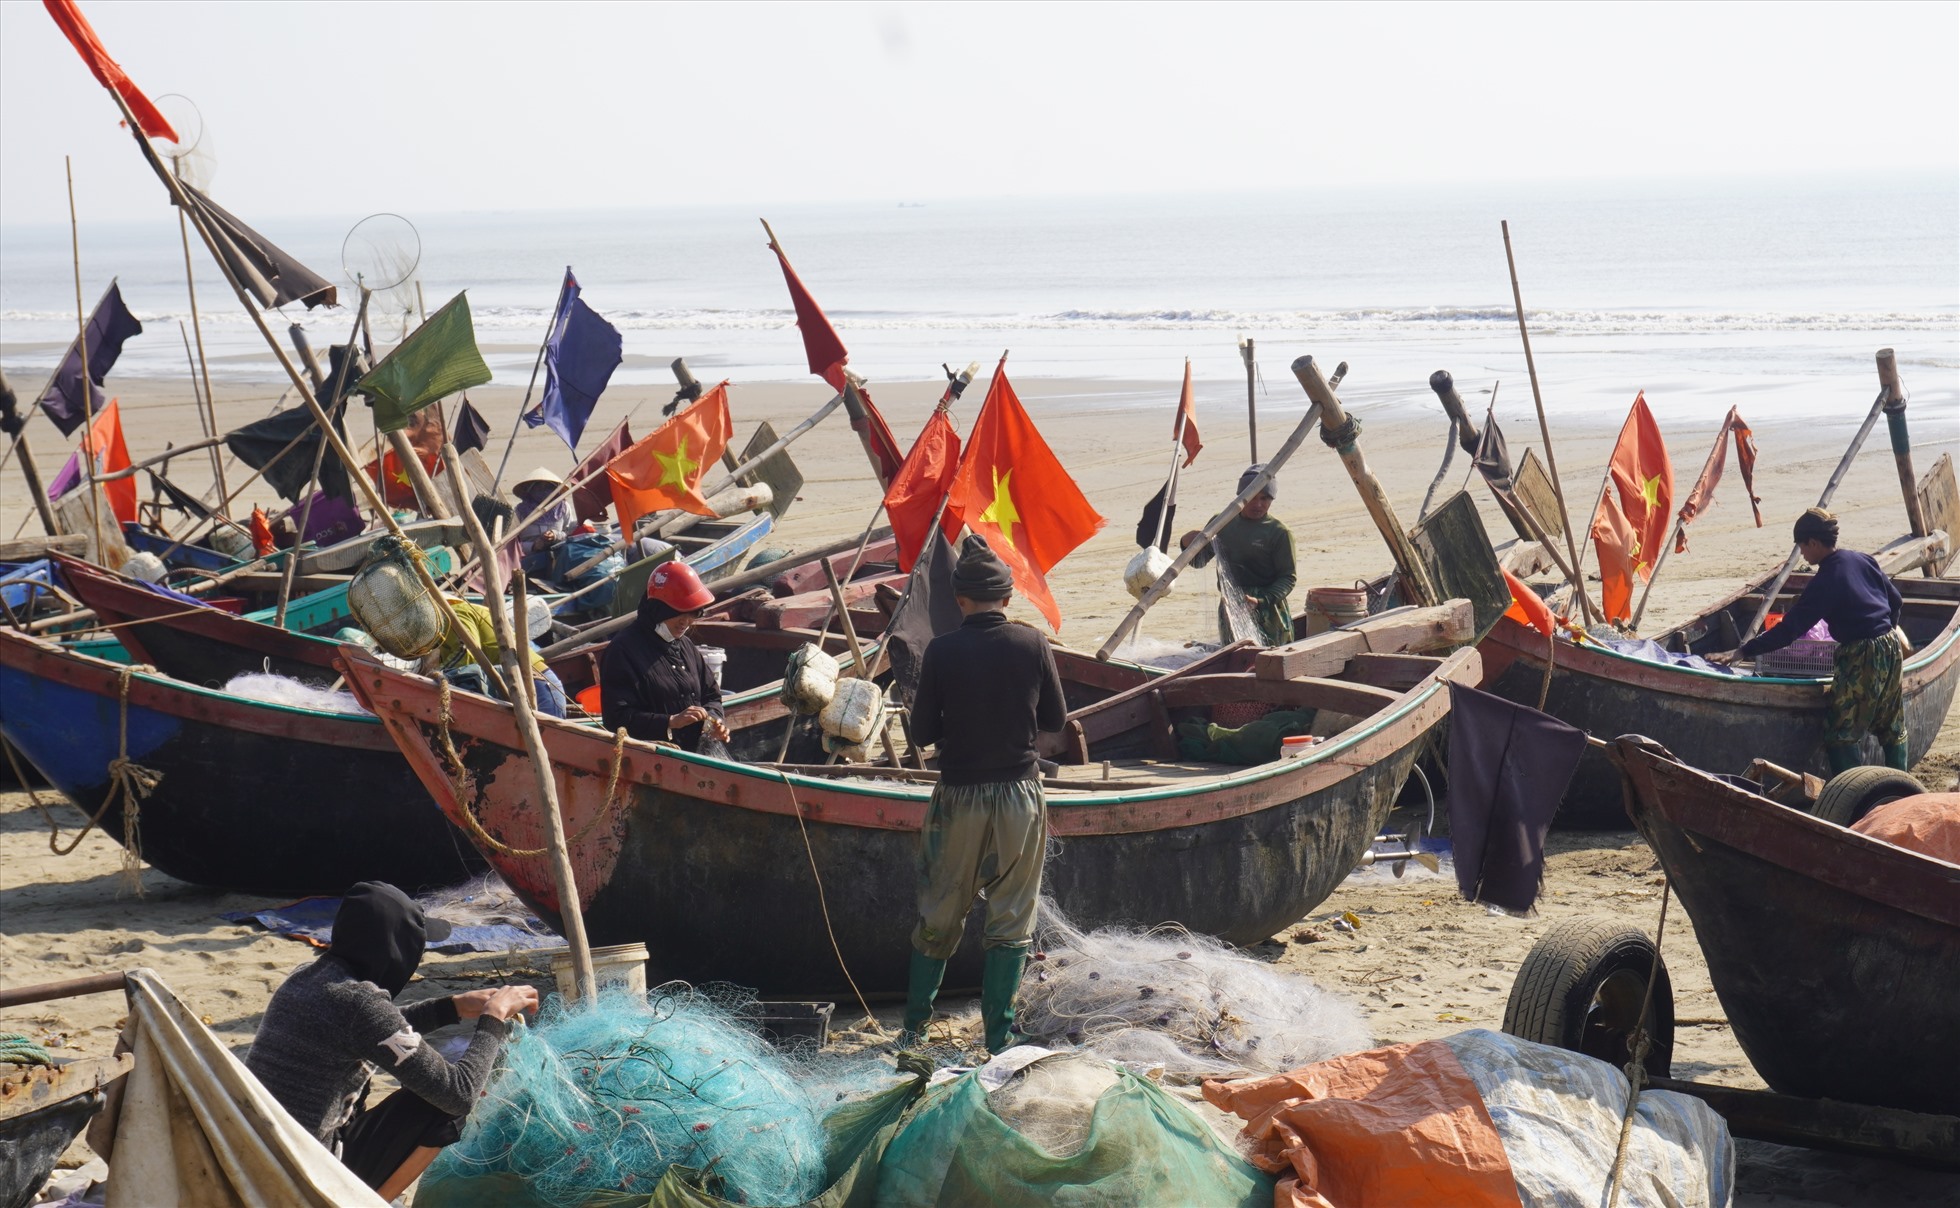 Ngư dân Sầm Sơn thu gom ngư lưới cụ, chuẩn bị sẵn sàng cho những chuyến biển tiếp theo. Ảnh: Quách Du